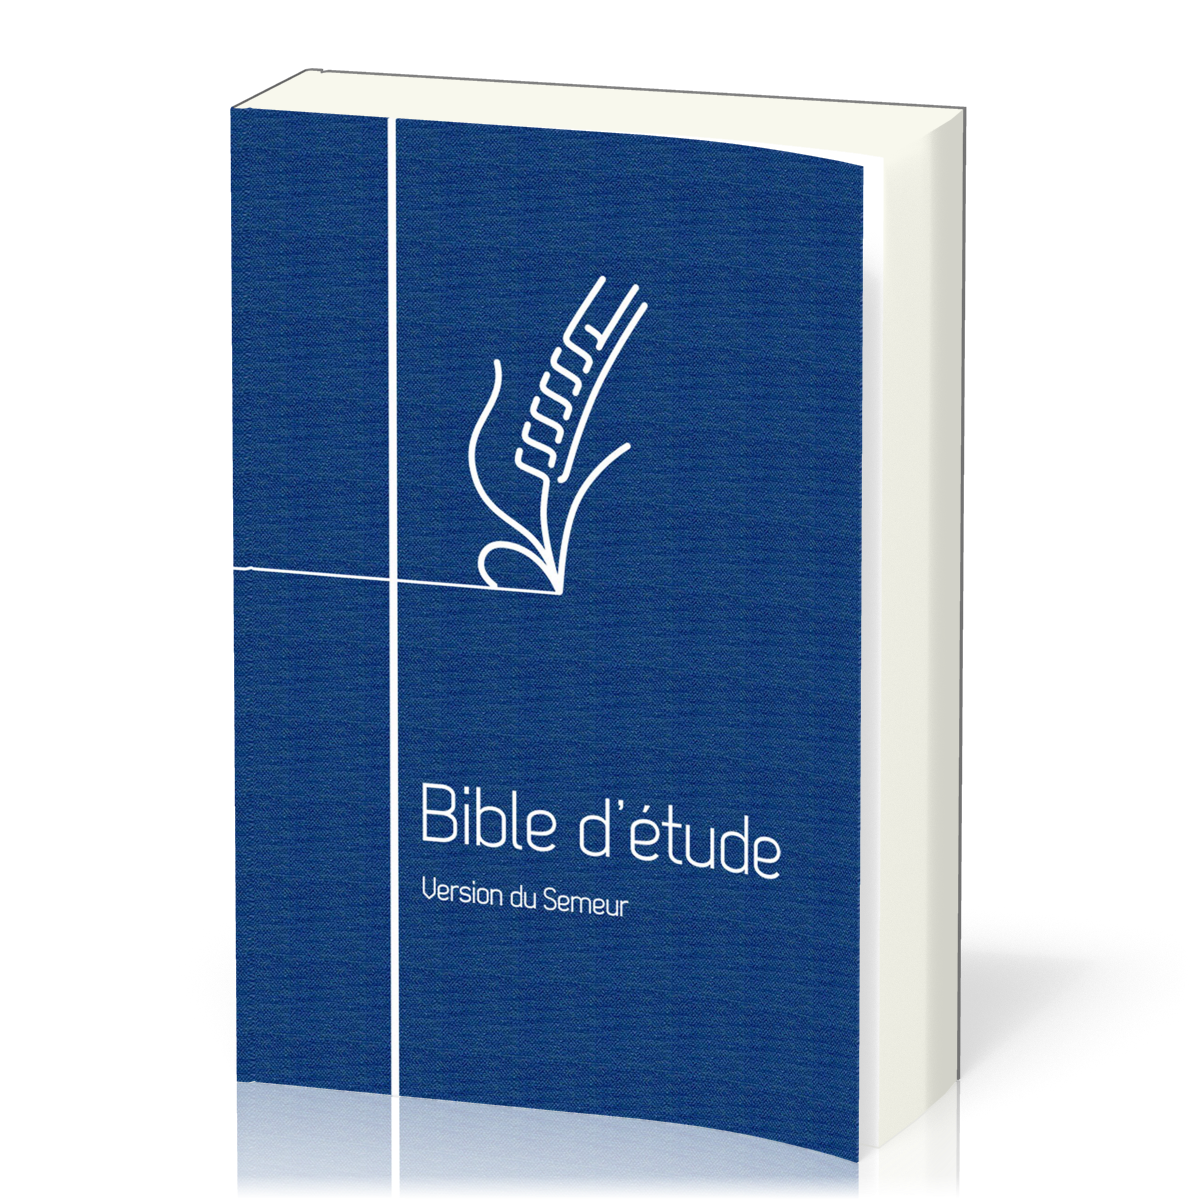 Bible d'étude Semeur 2015 couverture souple bleue tranche blanche